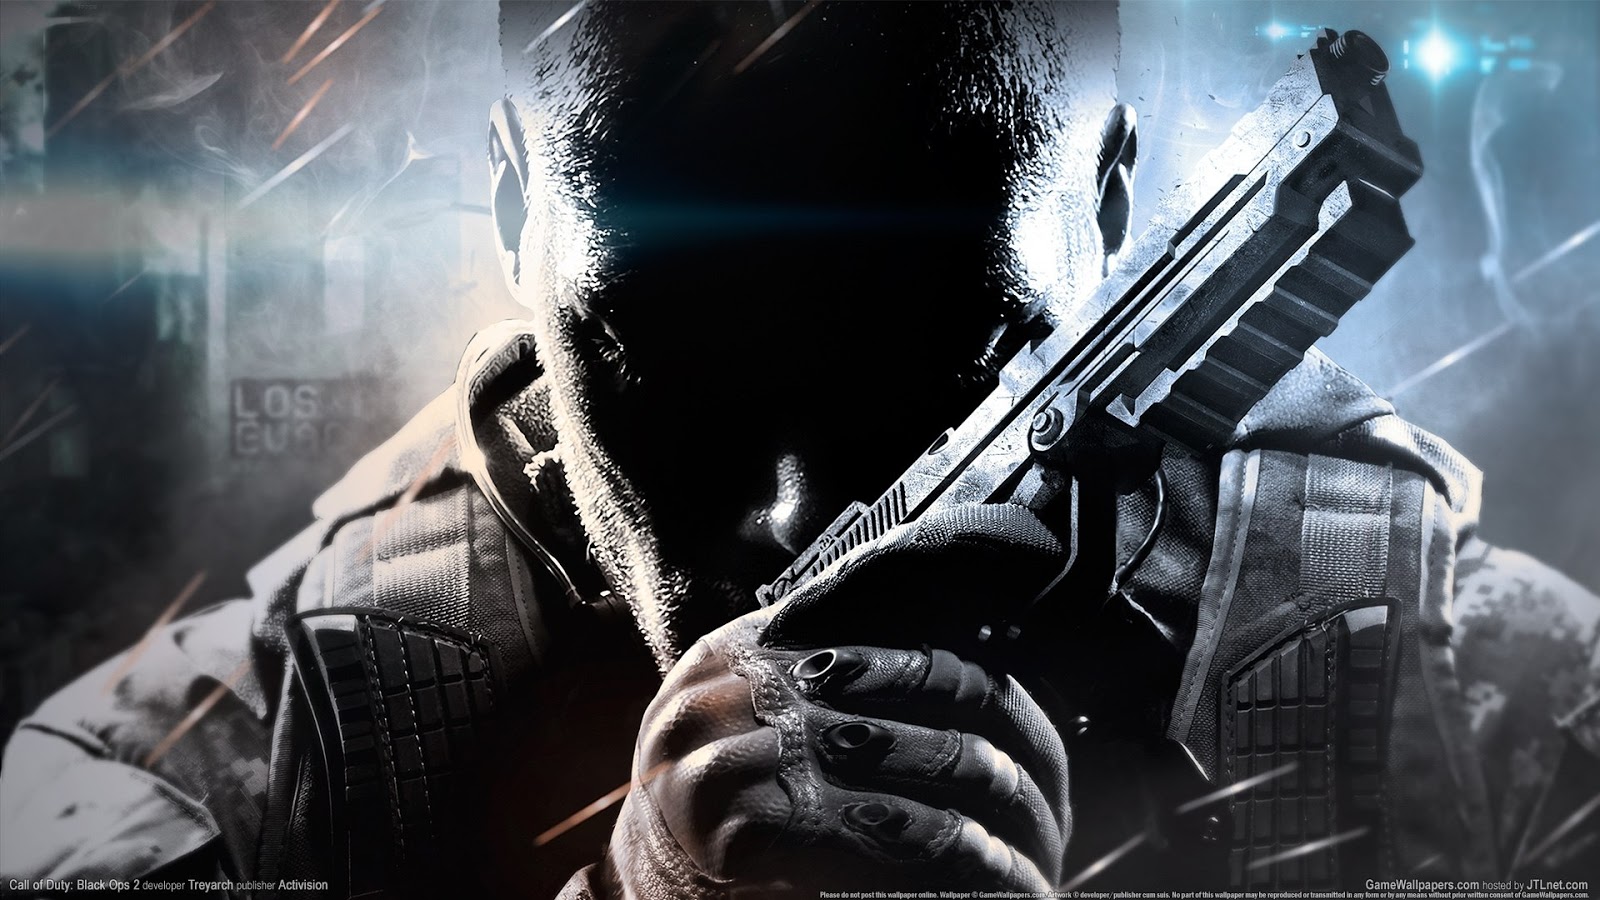 Franquia Call of Duty acusada de motivar assassino do massacre de